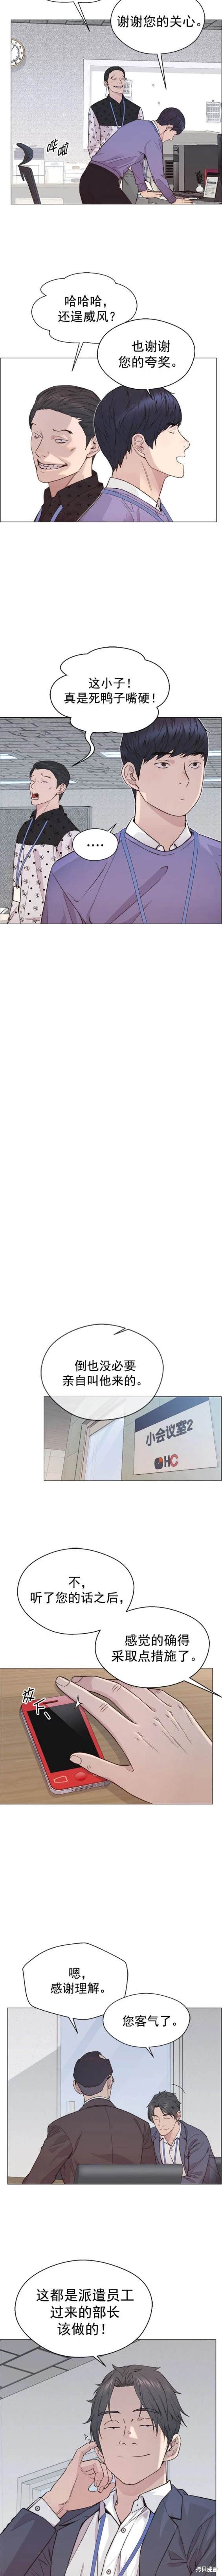 男子汉漫画,第156话6图